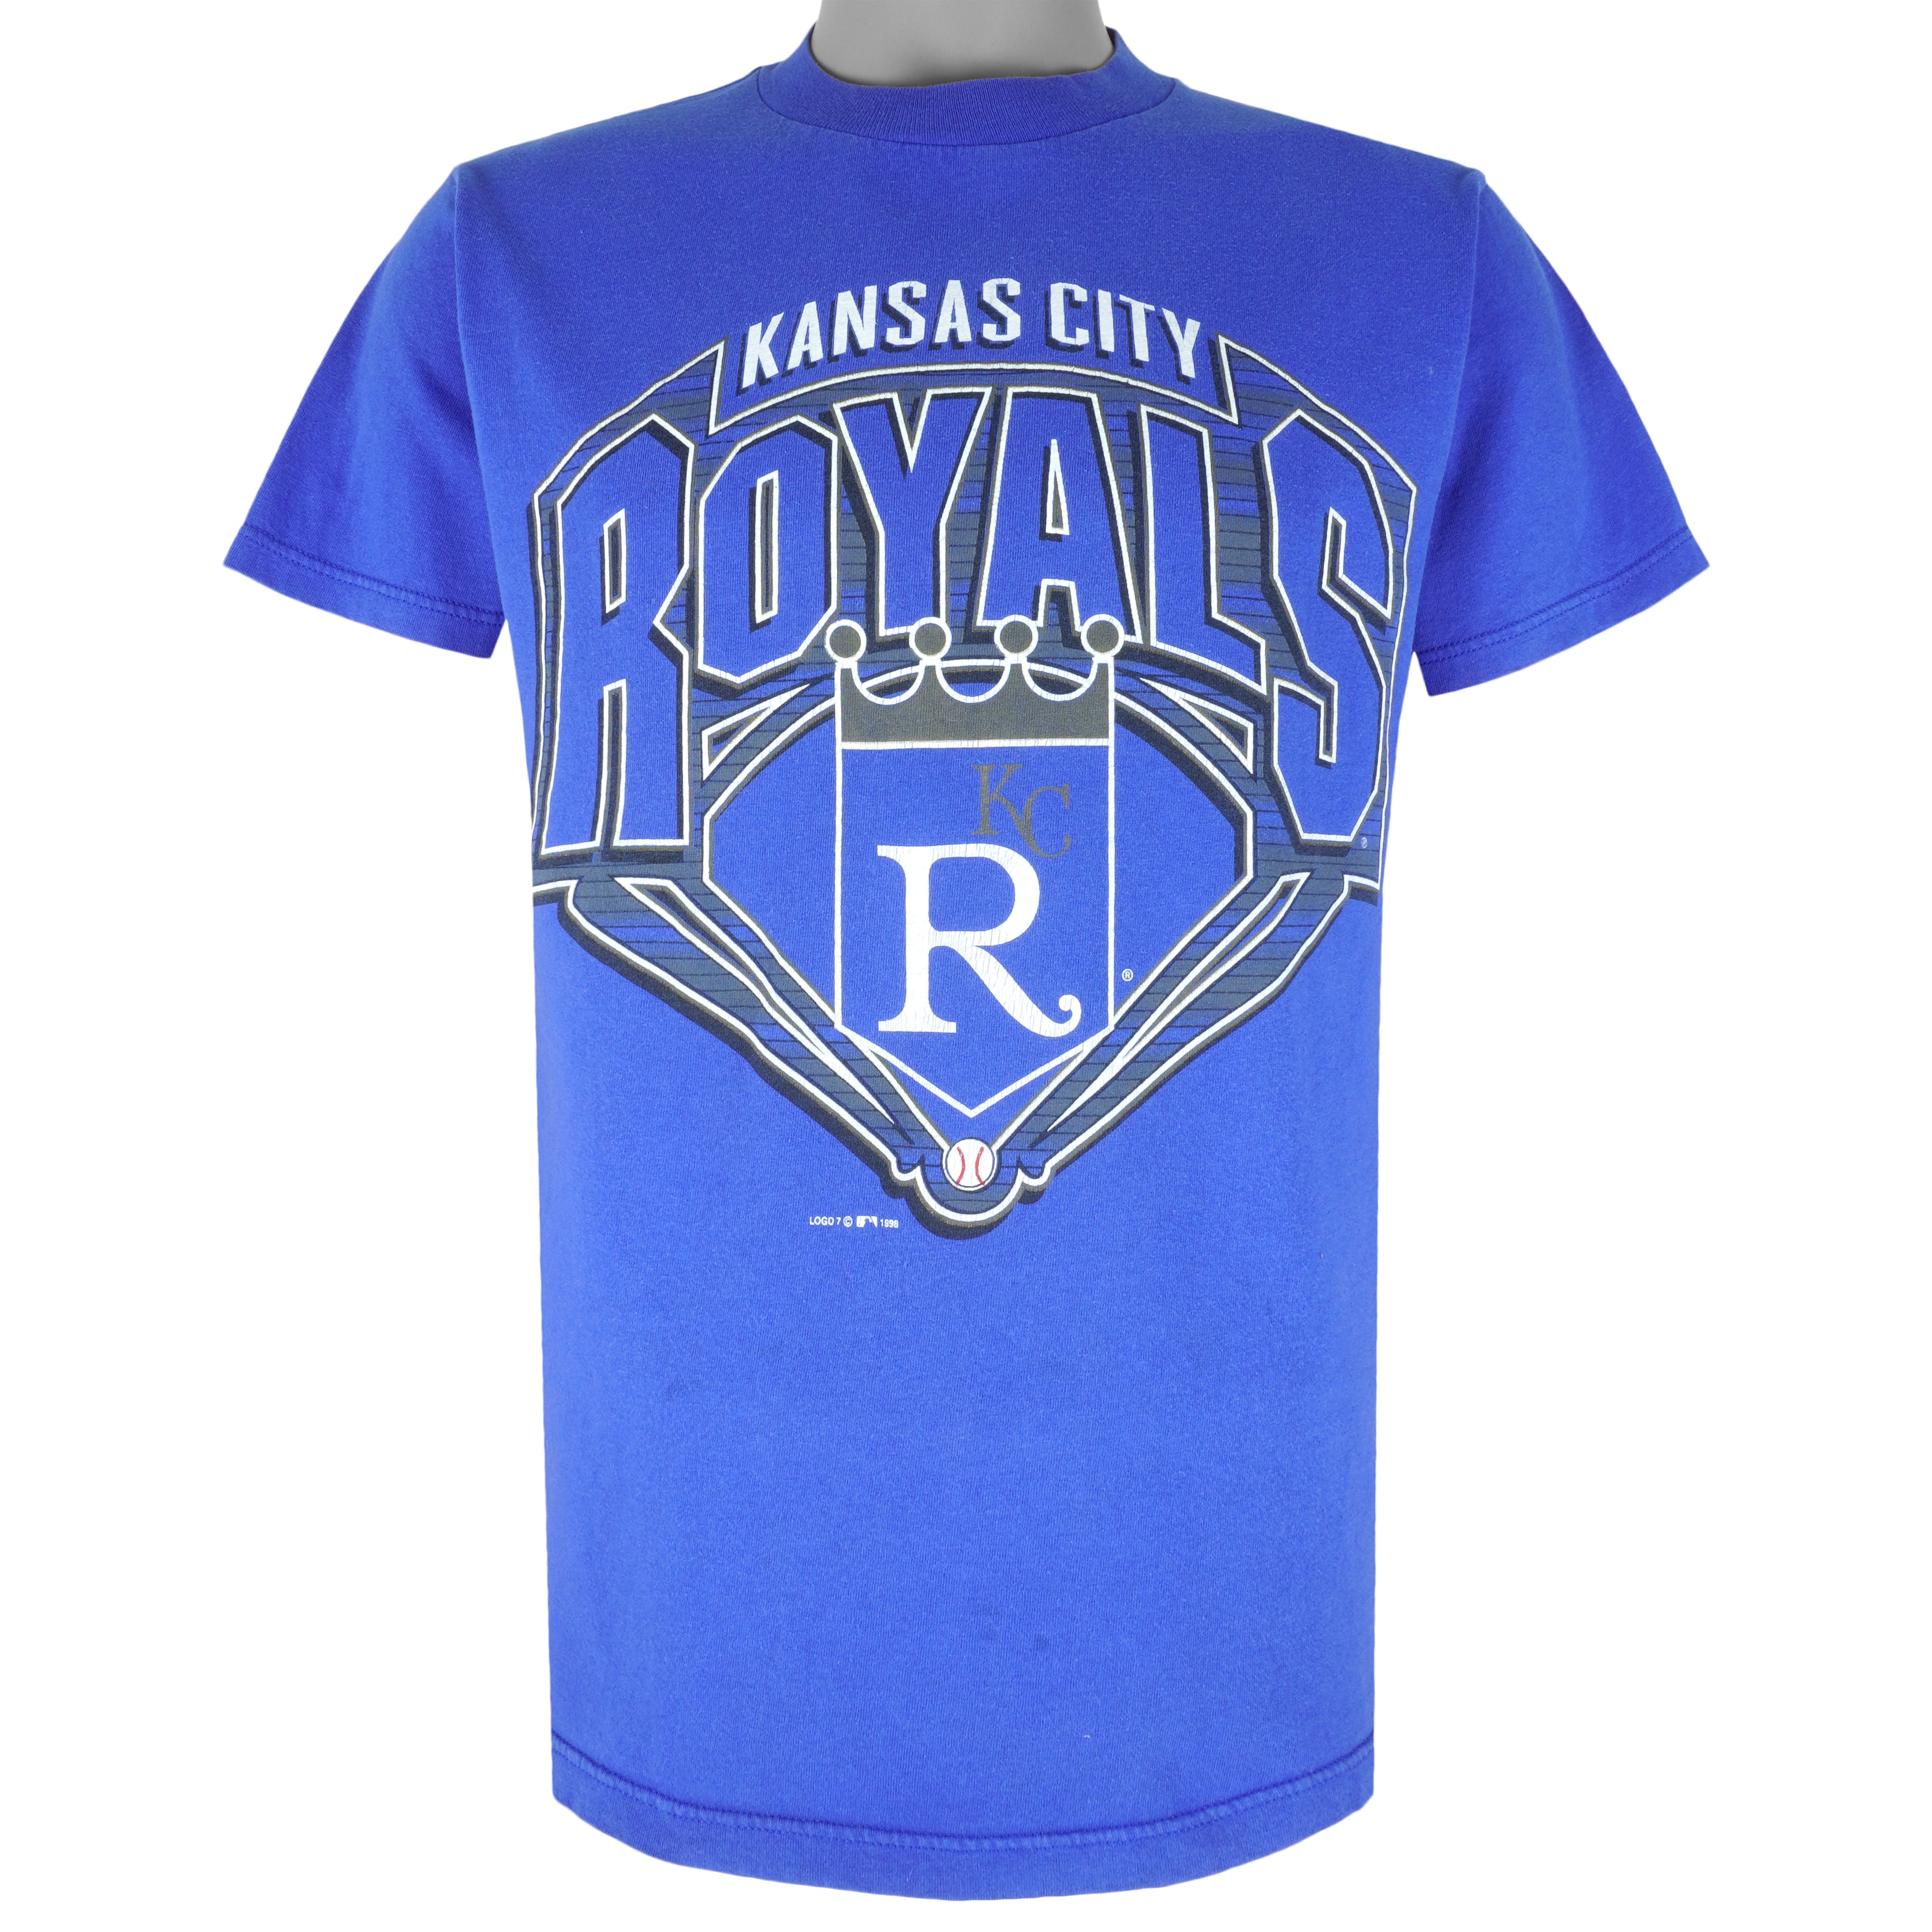 Kansas City Royals Stitch Baseball Jersey -  Worldwide  Shipping